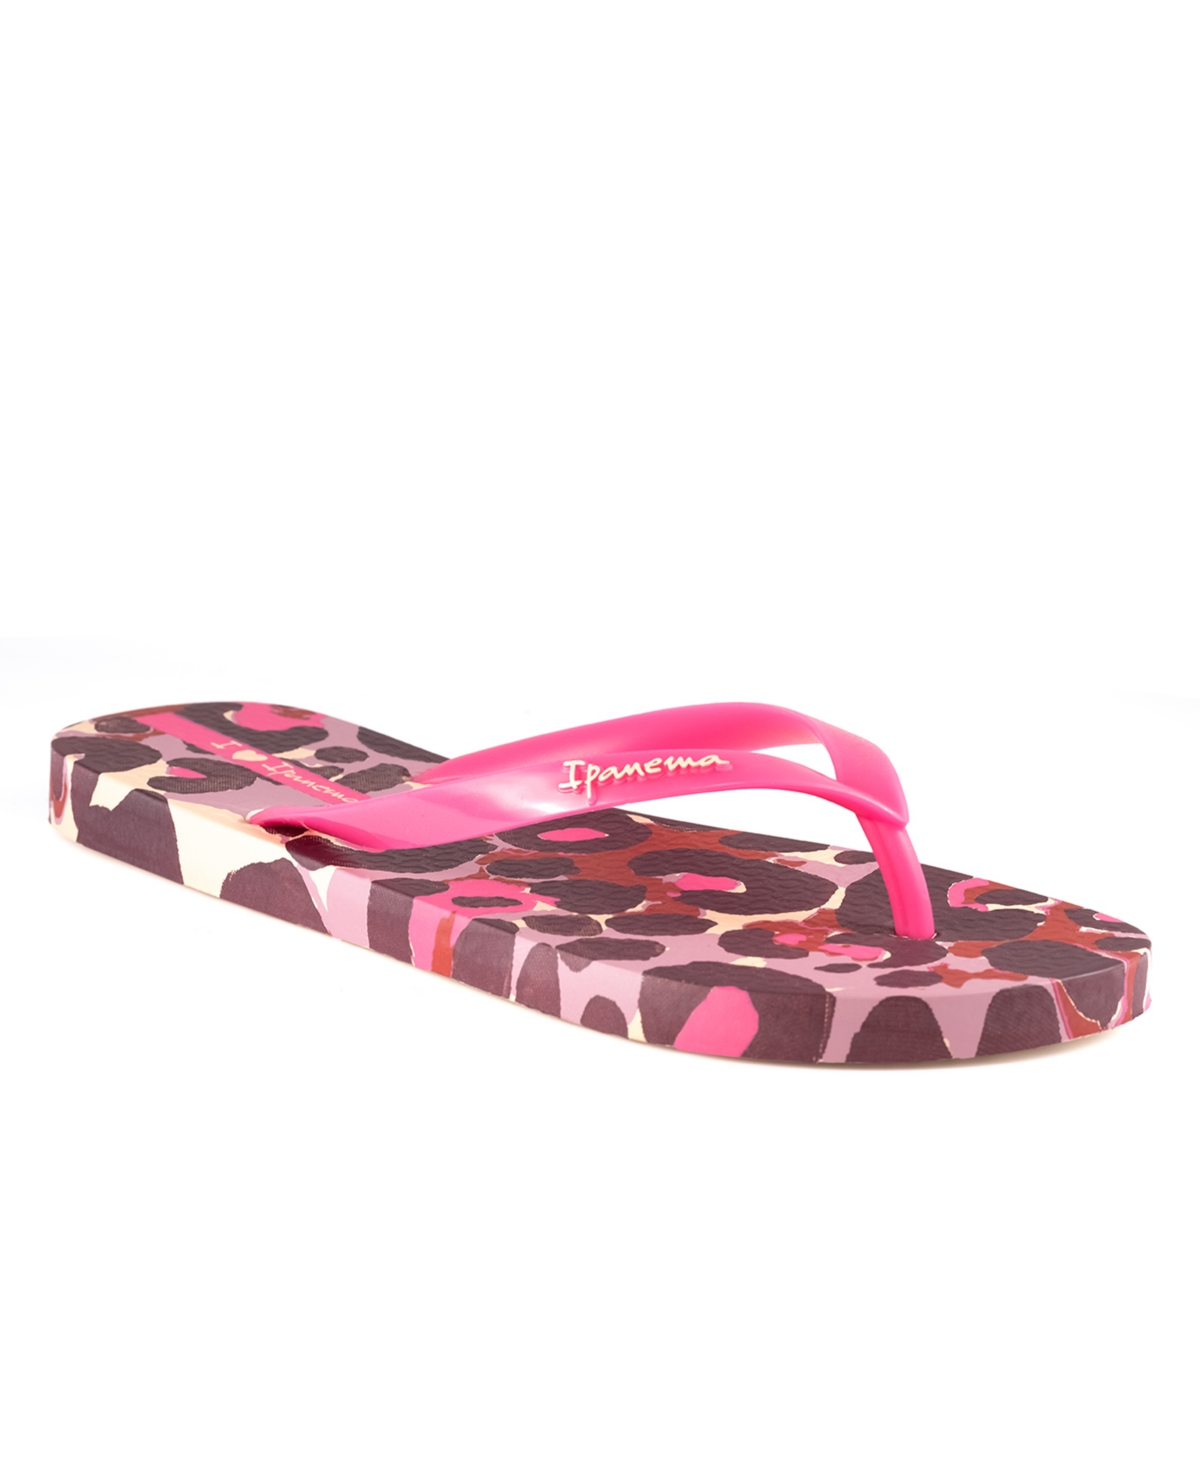 Ipanema Women's Animale Print Ii Flip-flop Sandals Women's Shoes In Beige/pink